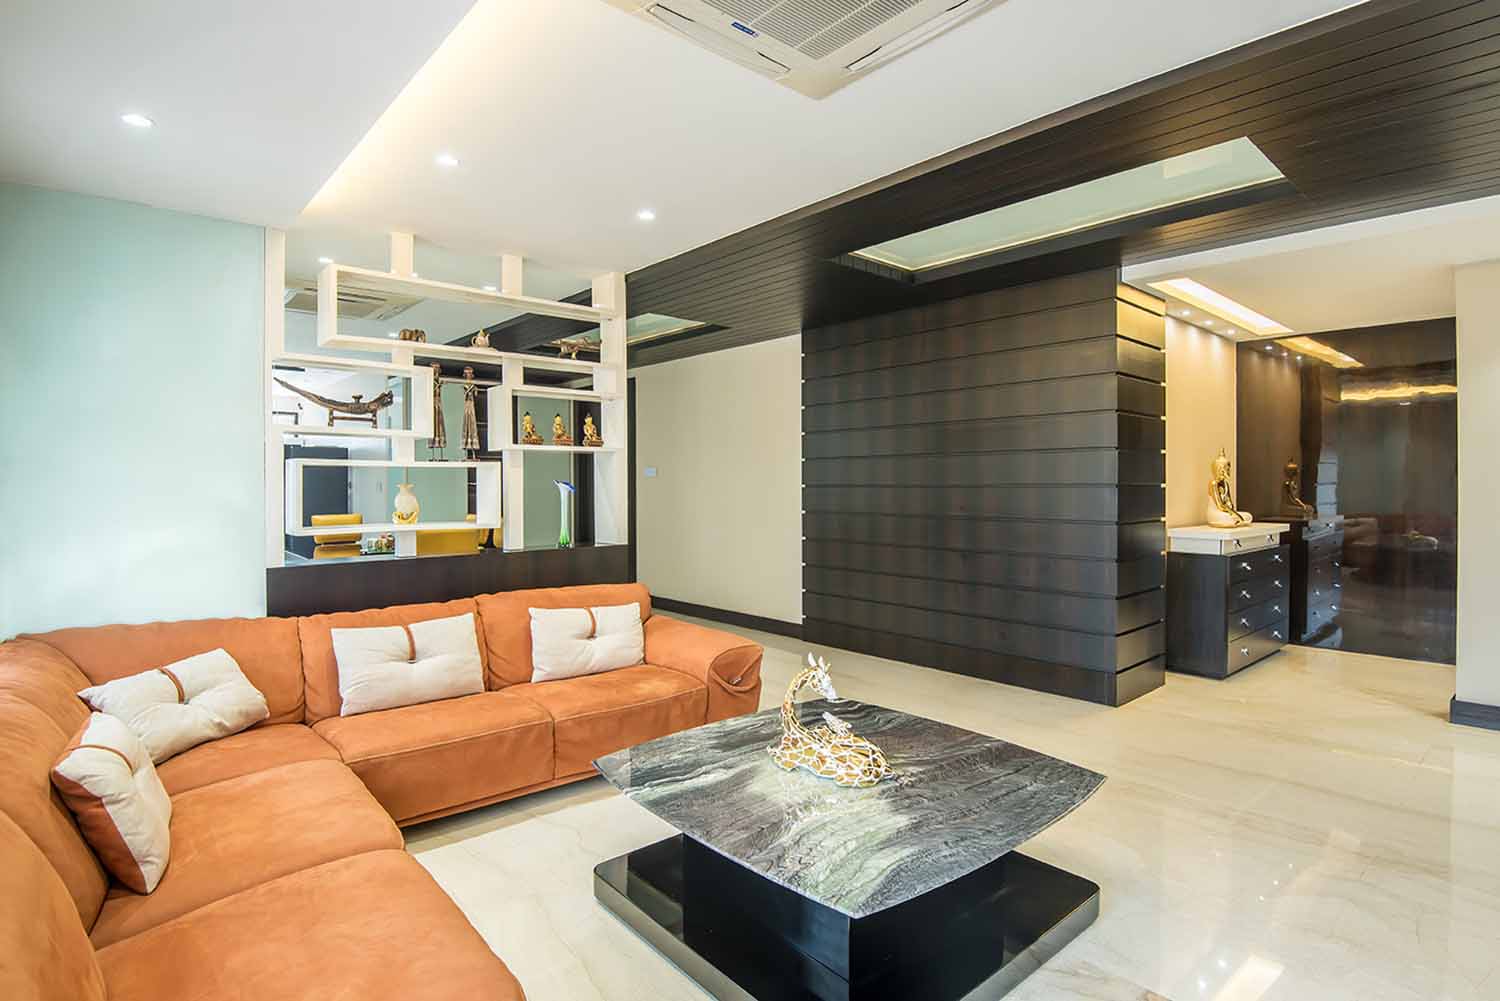 Best interior designing firms in bhubaneswar